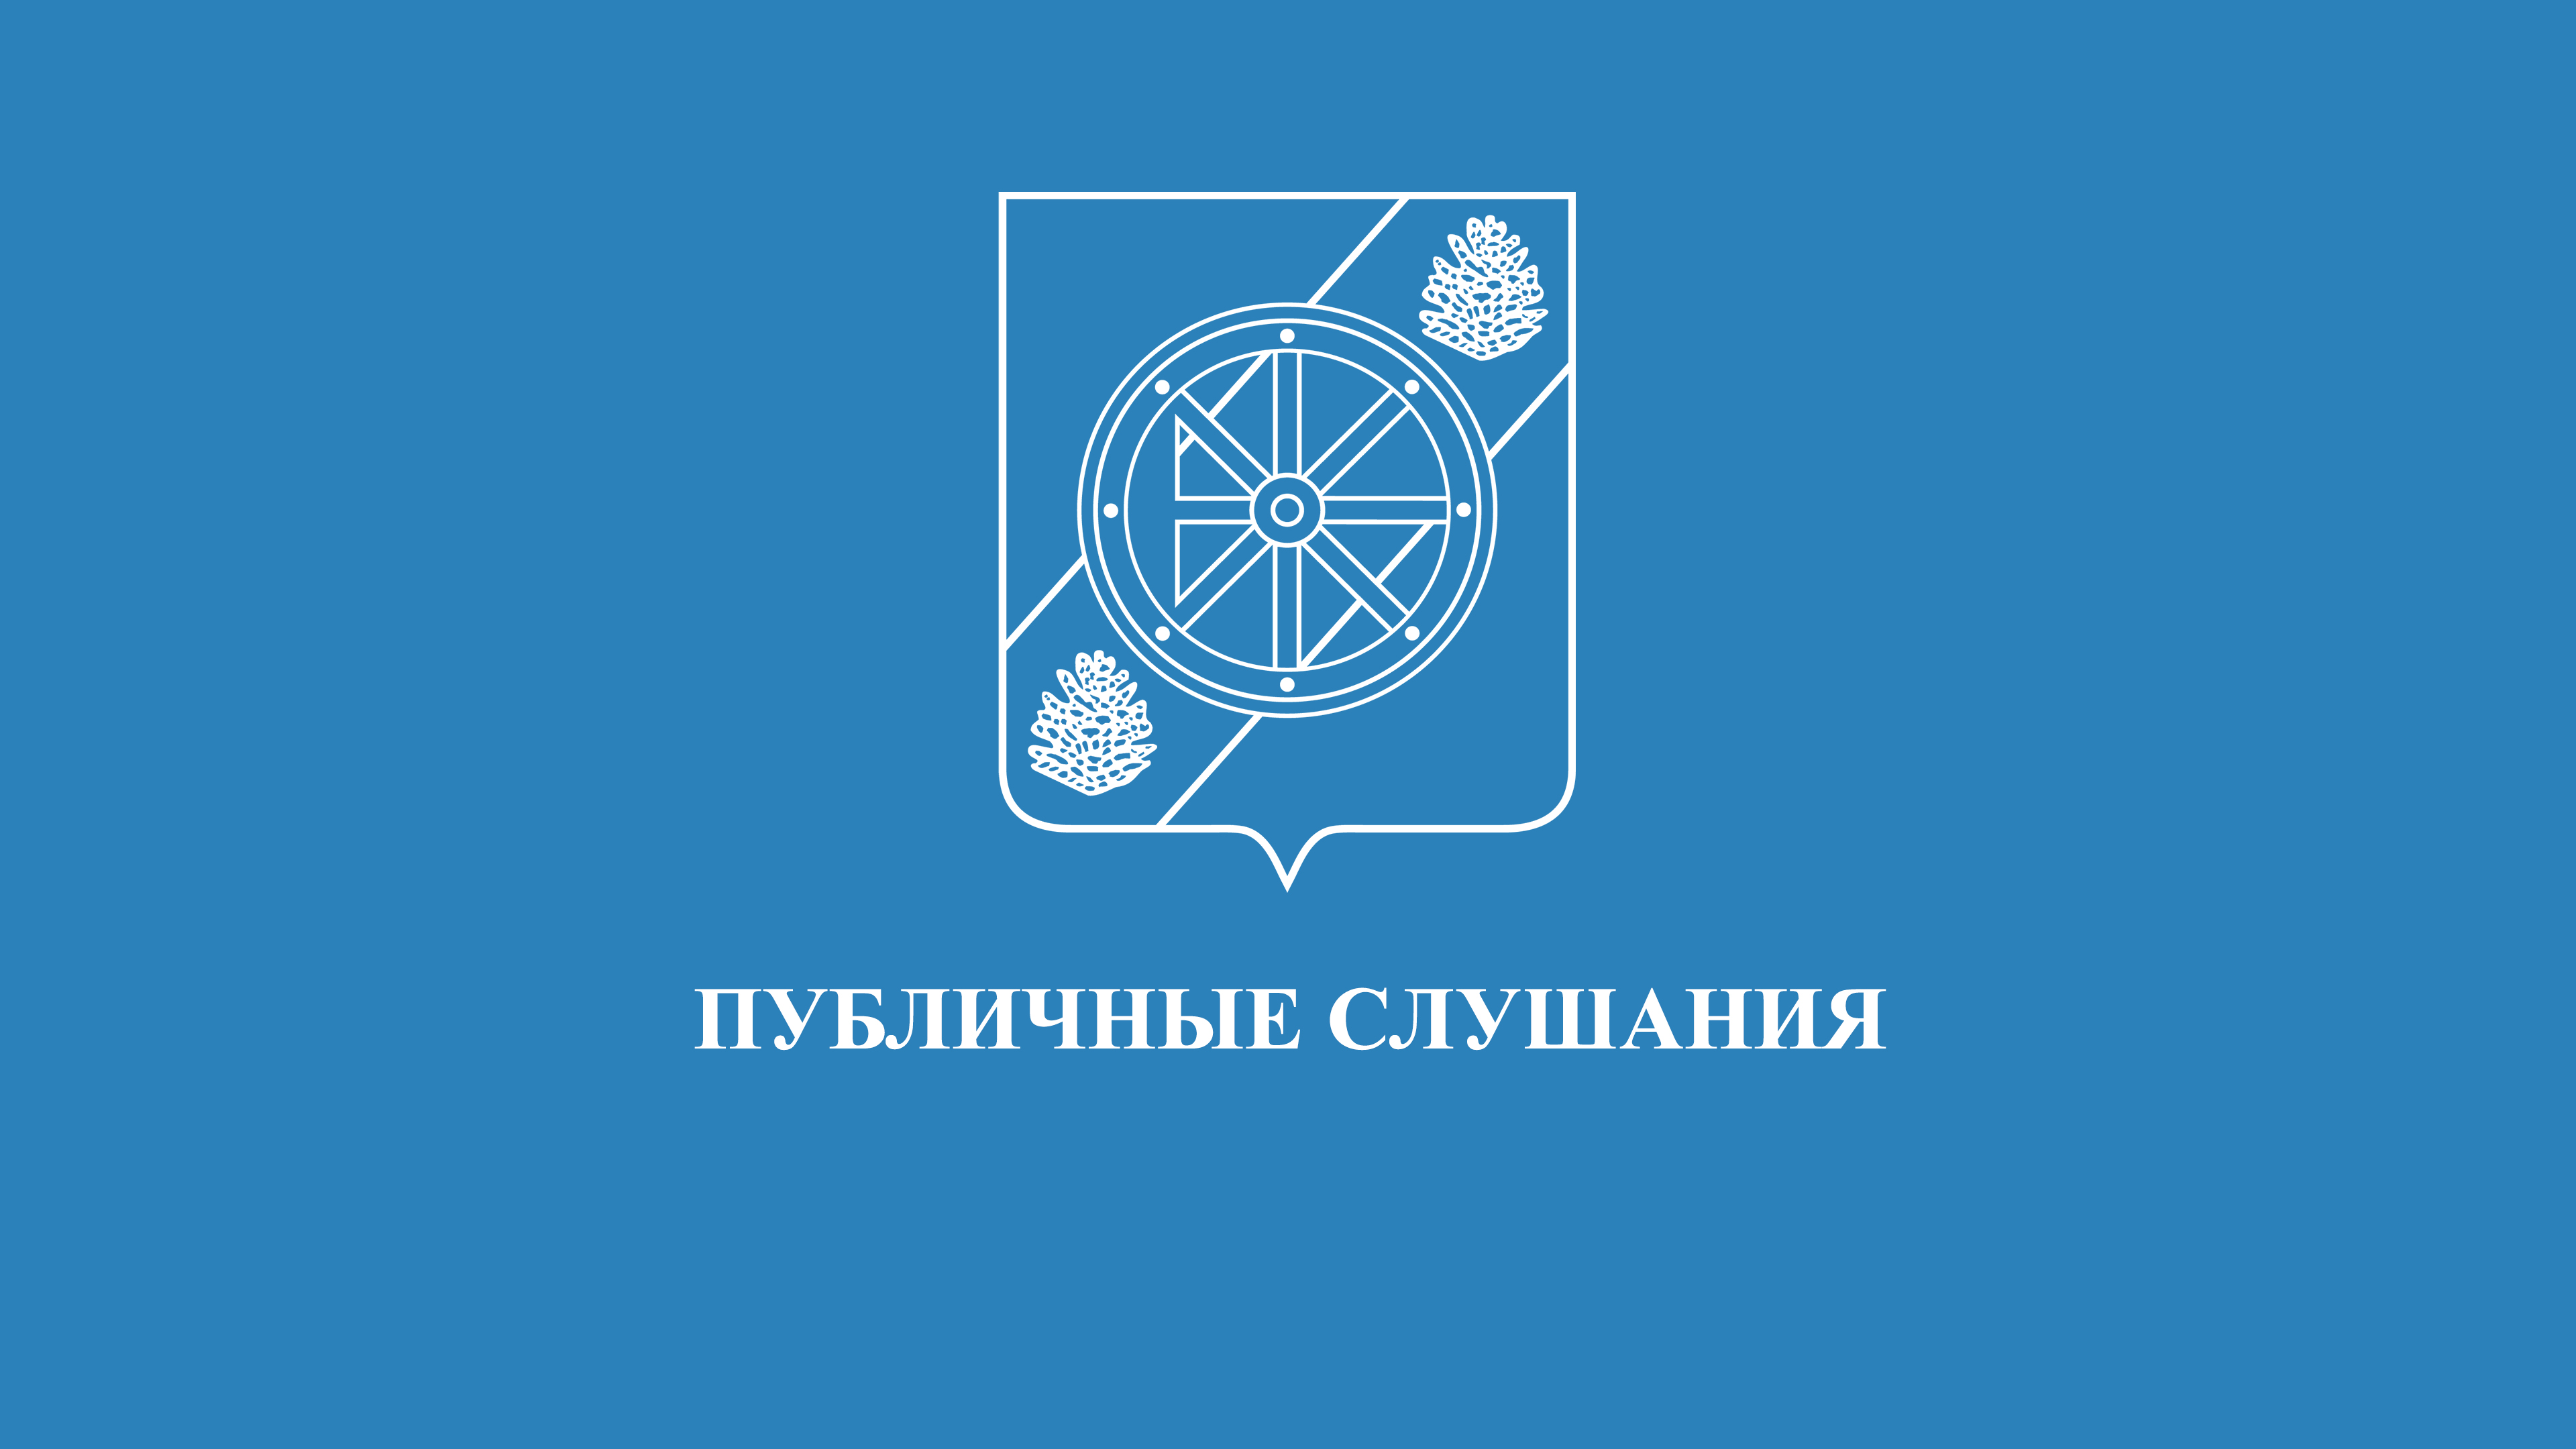 Об утверждении отчета об исполнении бюджета Няндомского муниципального района Архангельской области за 2020 год.